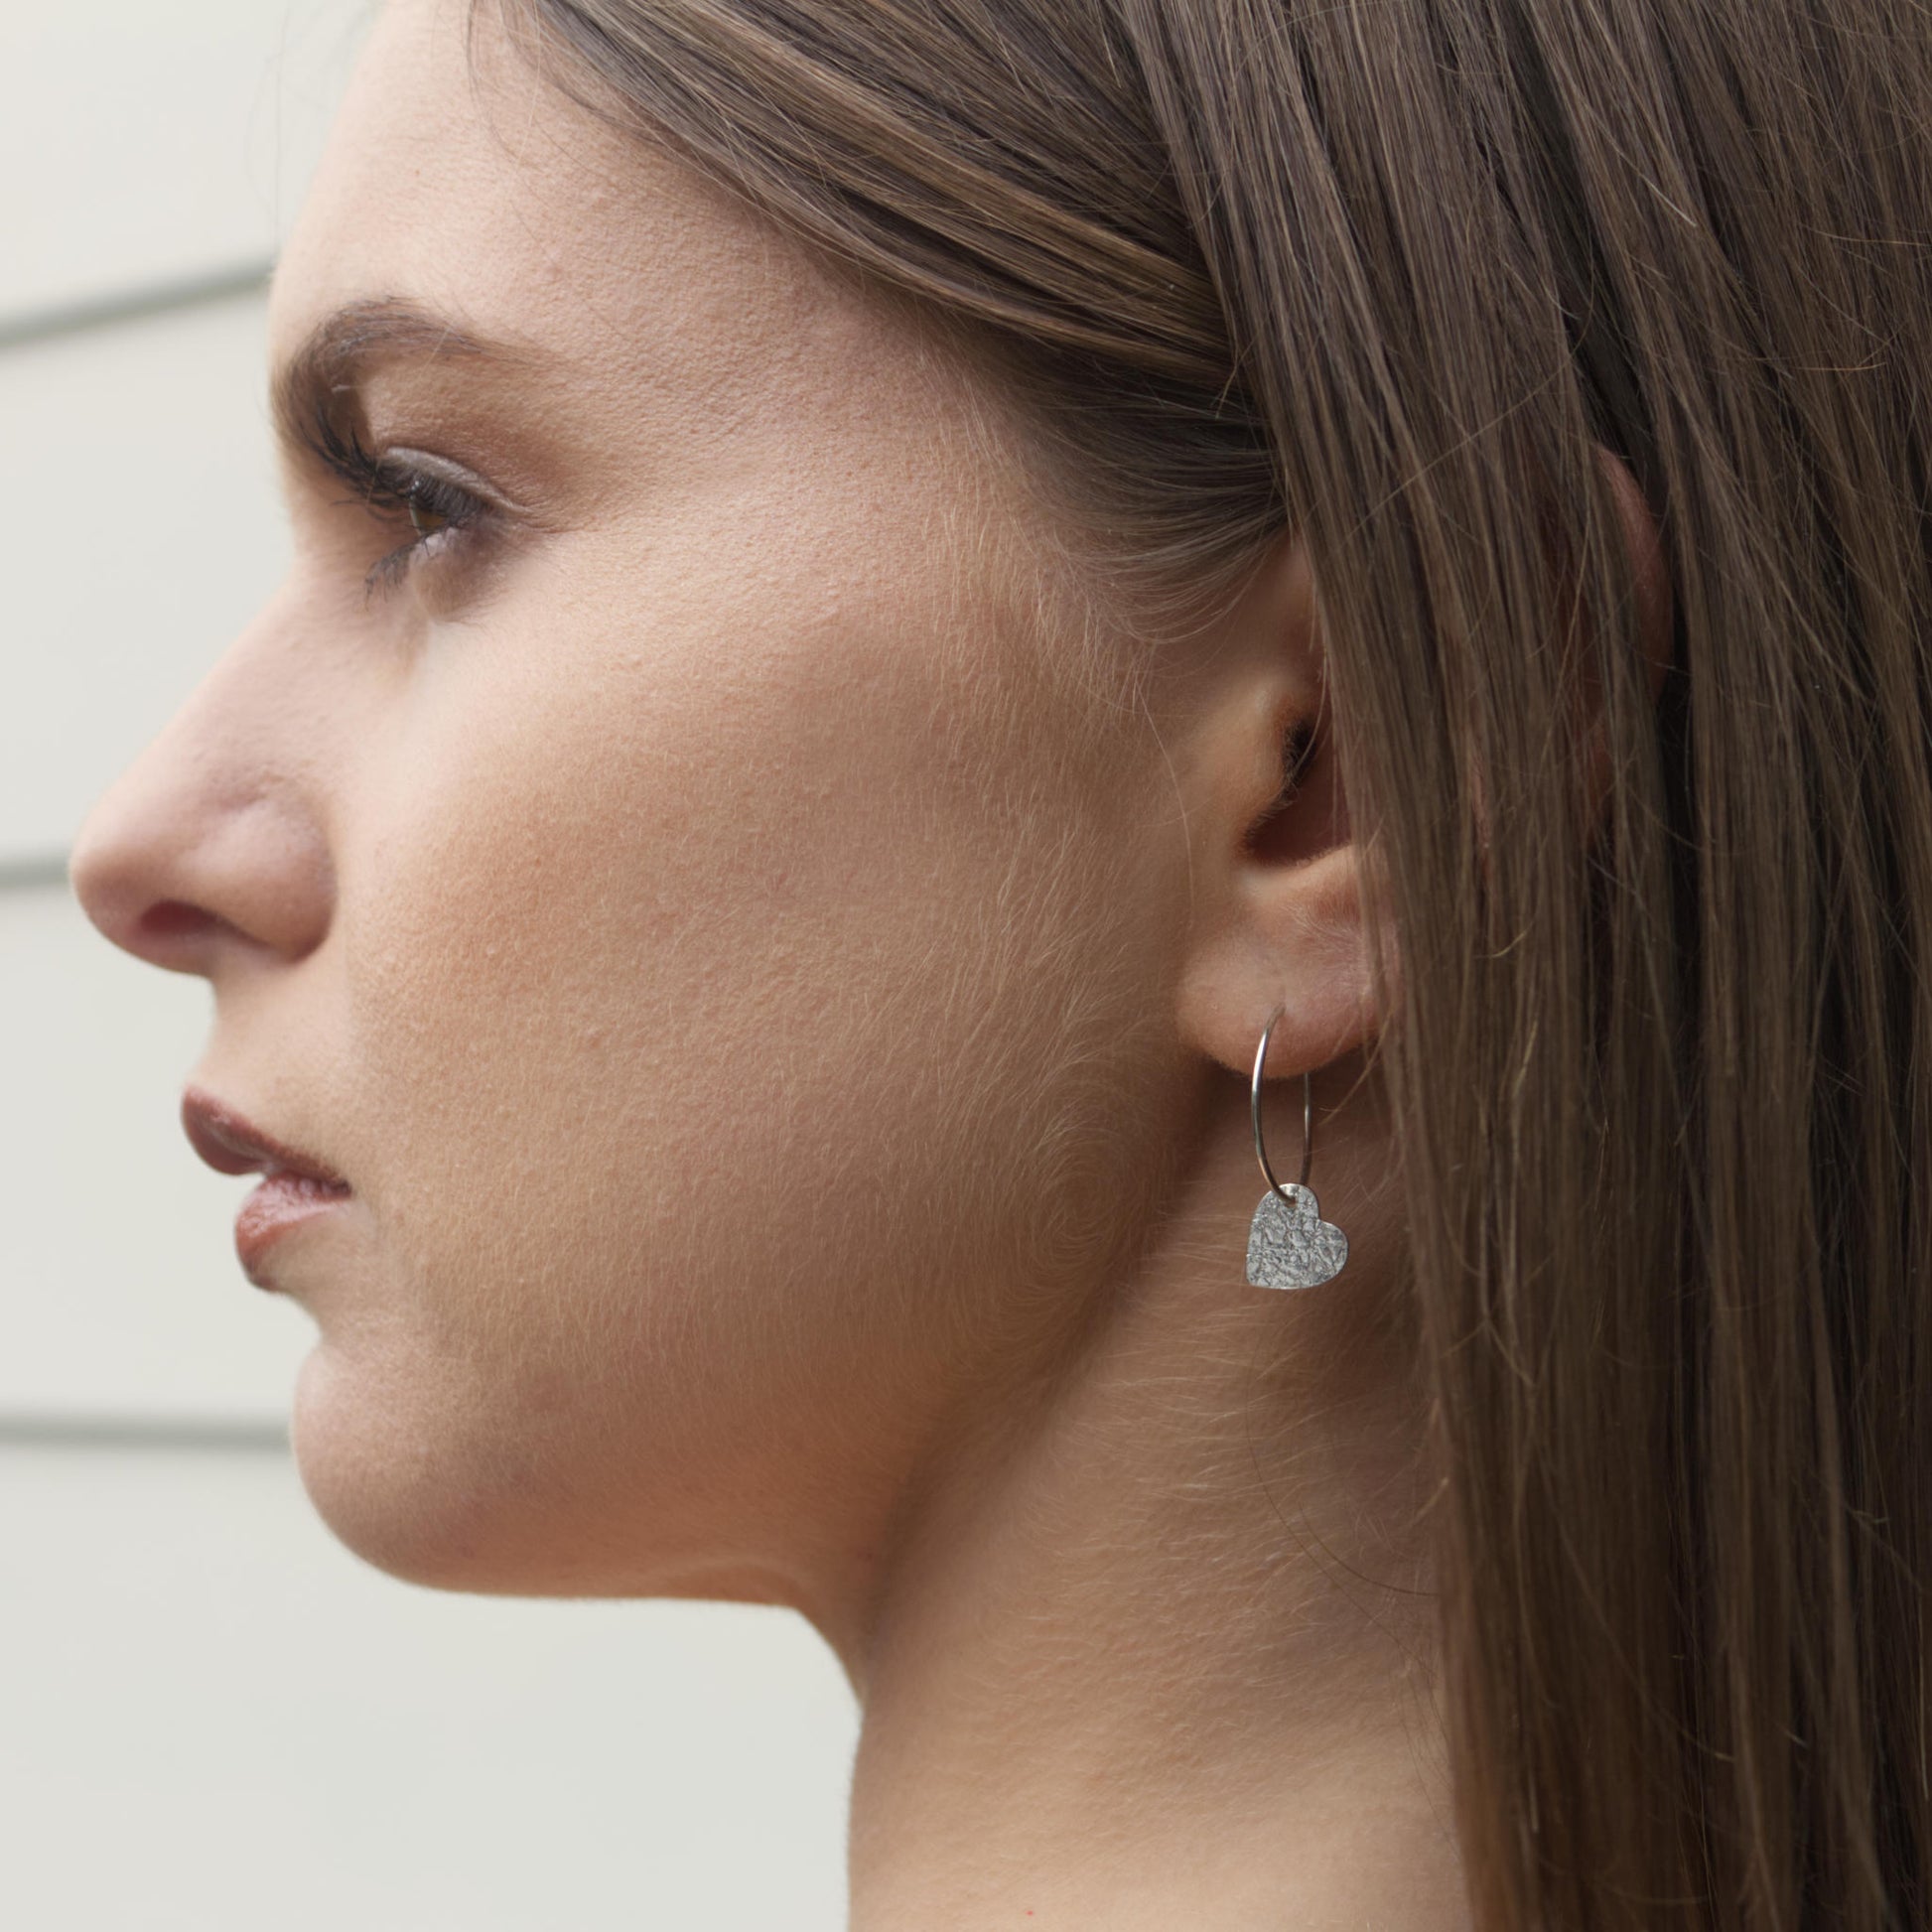 model wearing delicate sterling silver heart earrings